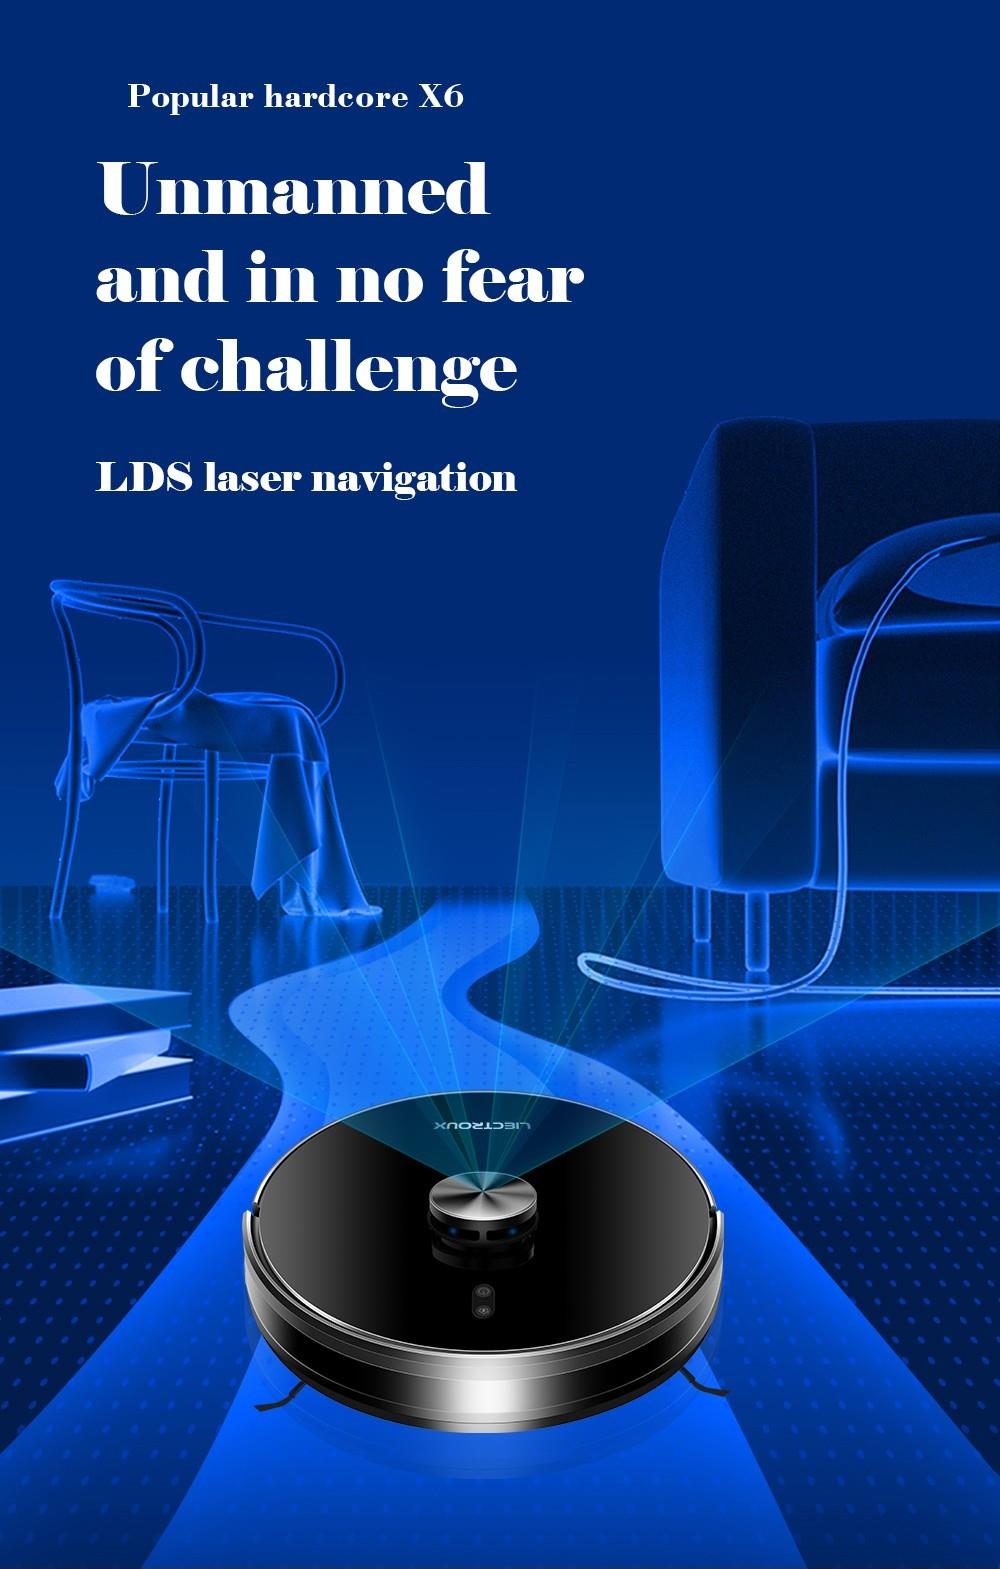 Liectroux X6 Saugroboter mit 6500 Pa, LDS-Lasernavigation, 235 ml Wassertank, 400 ml Mülleimer, 5 Karten